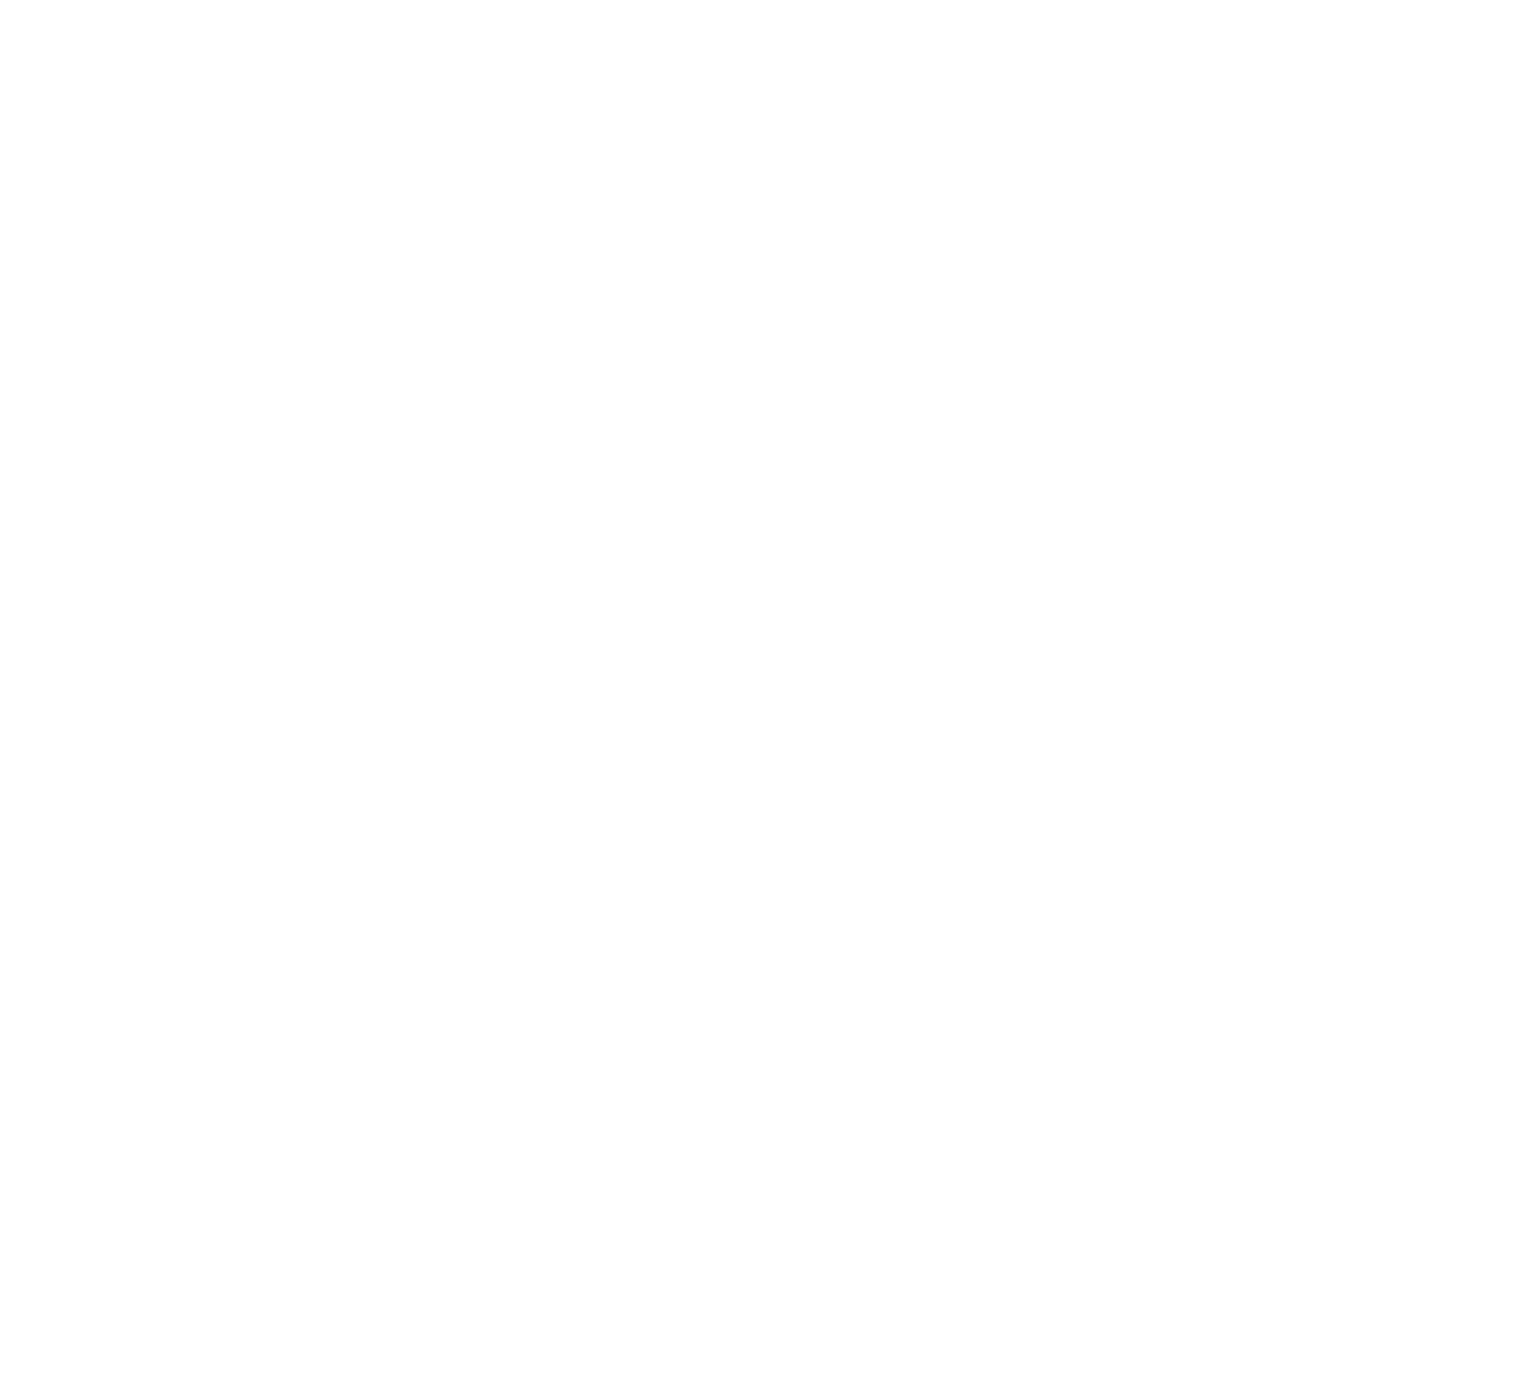 Komatsu logo for dark backgrounds (transparent PNG)